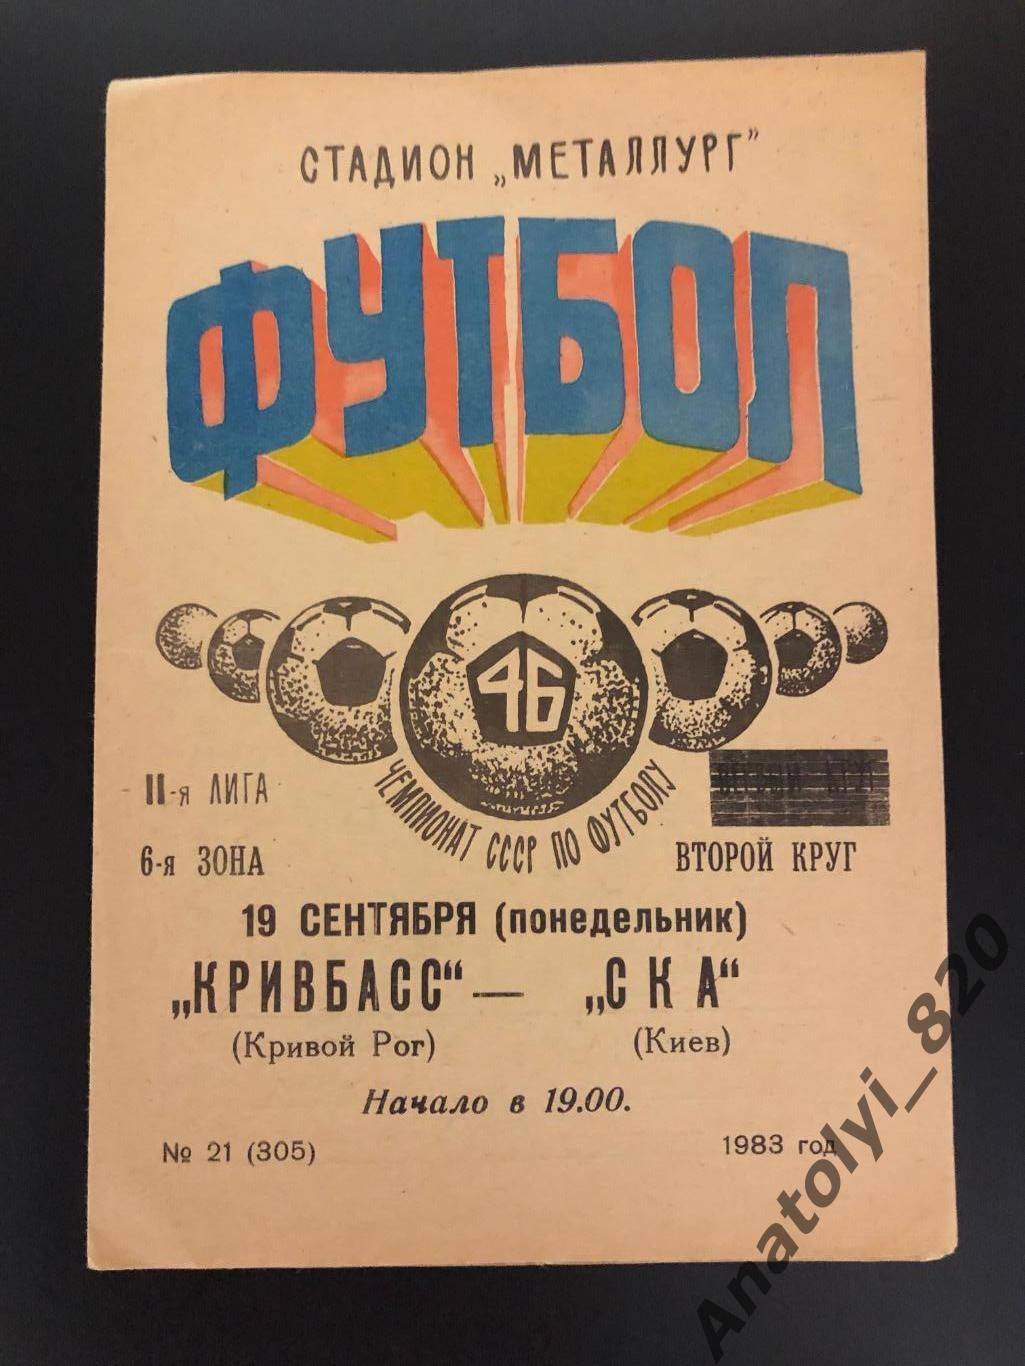 Кривбасс Кривой Рог - СКА Киев, 19.09.1983